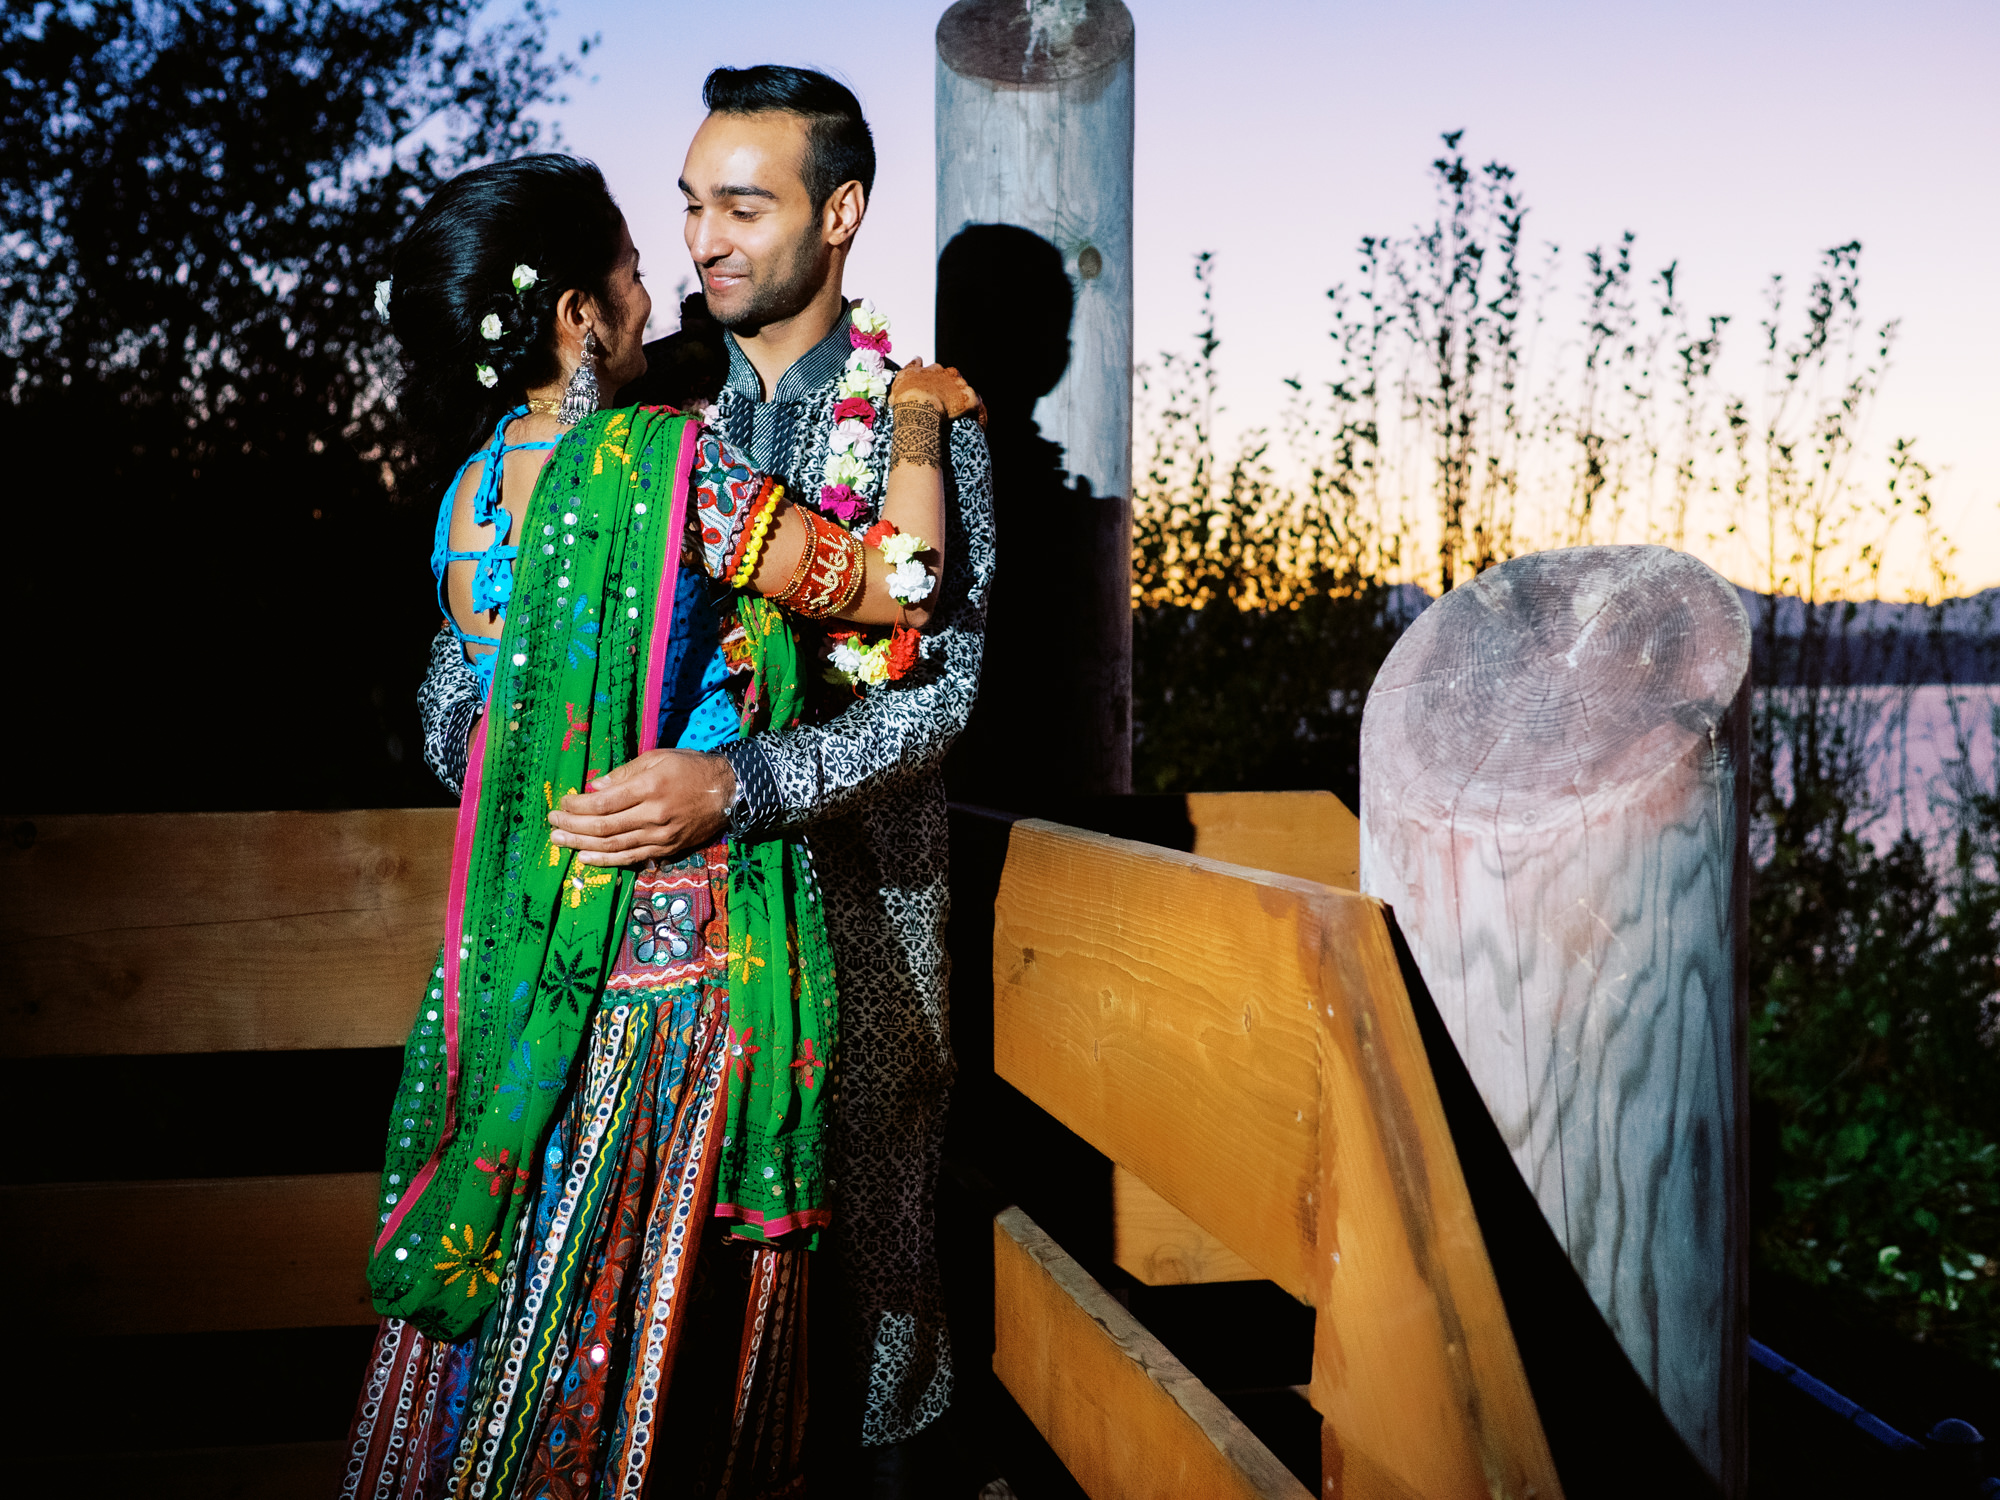 Seattle mehndi photographer: Mehndi wedding portraits